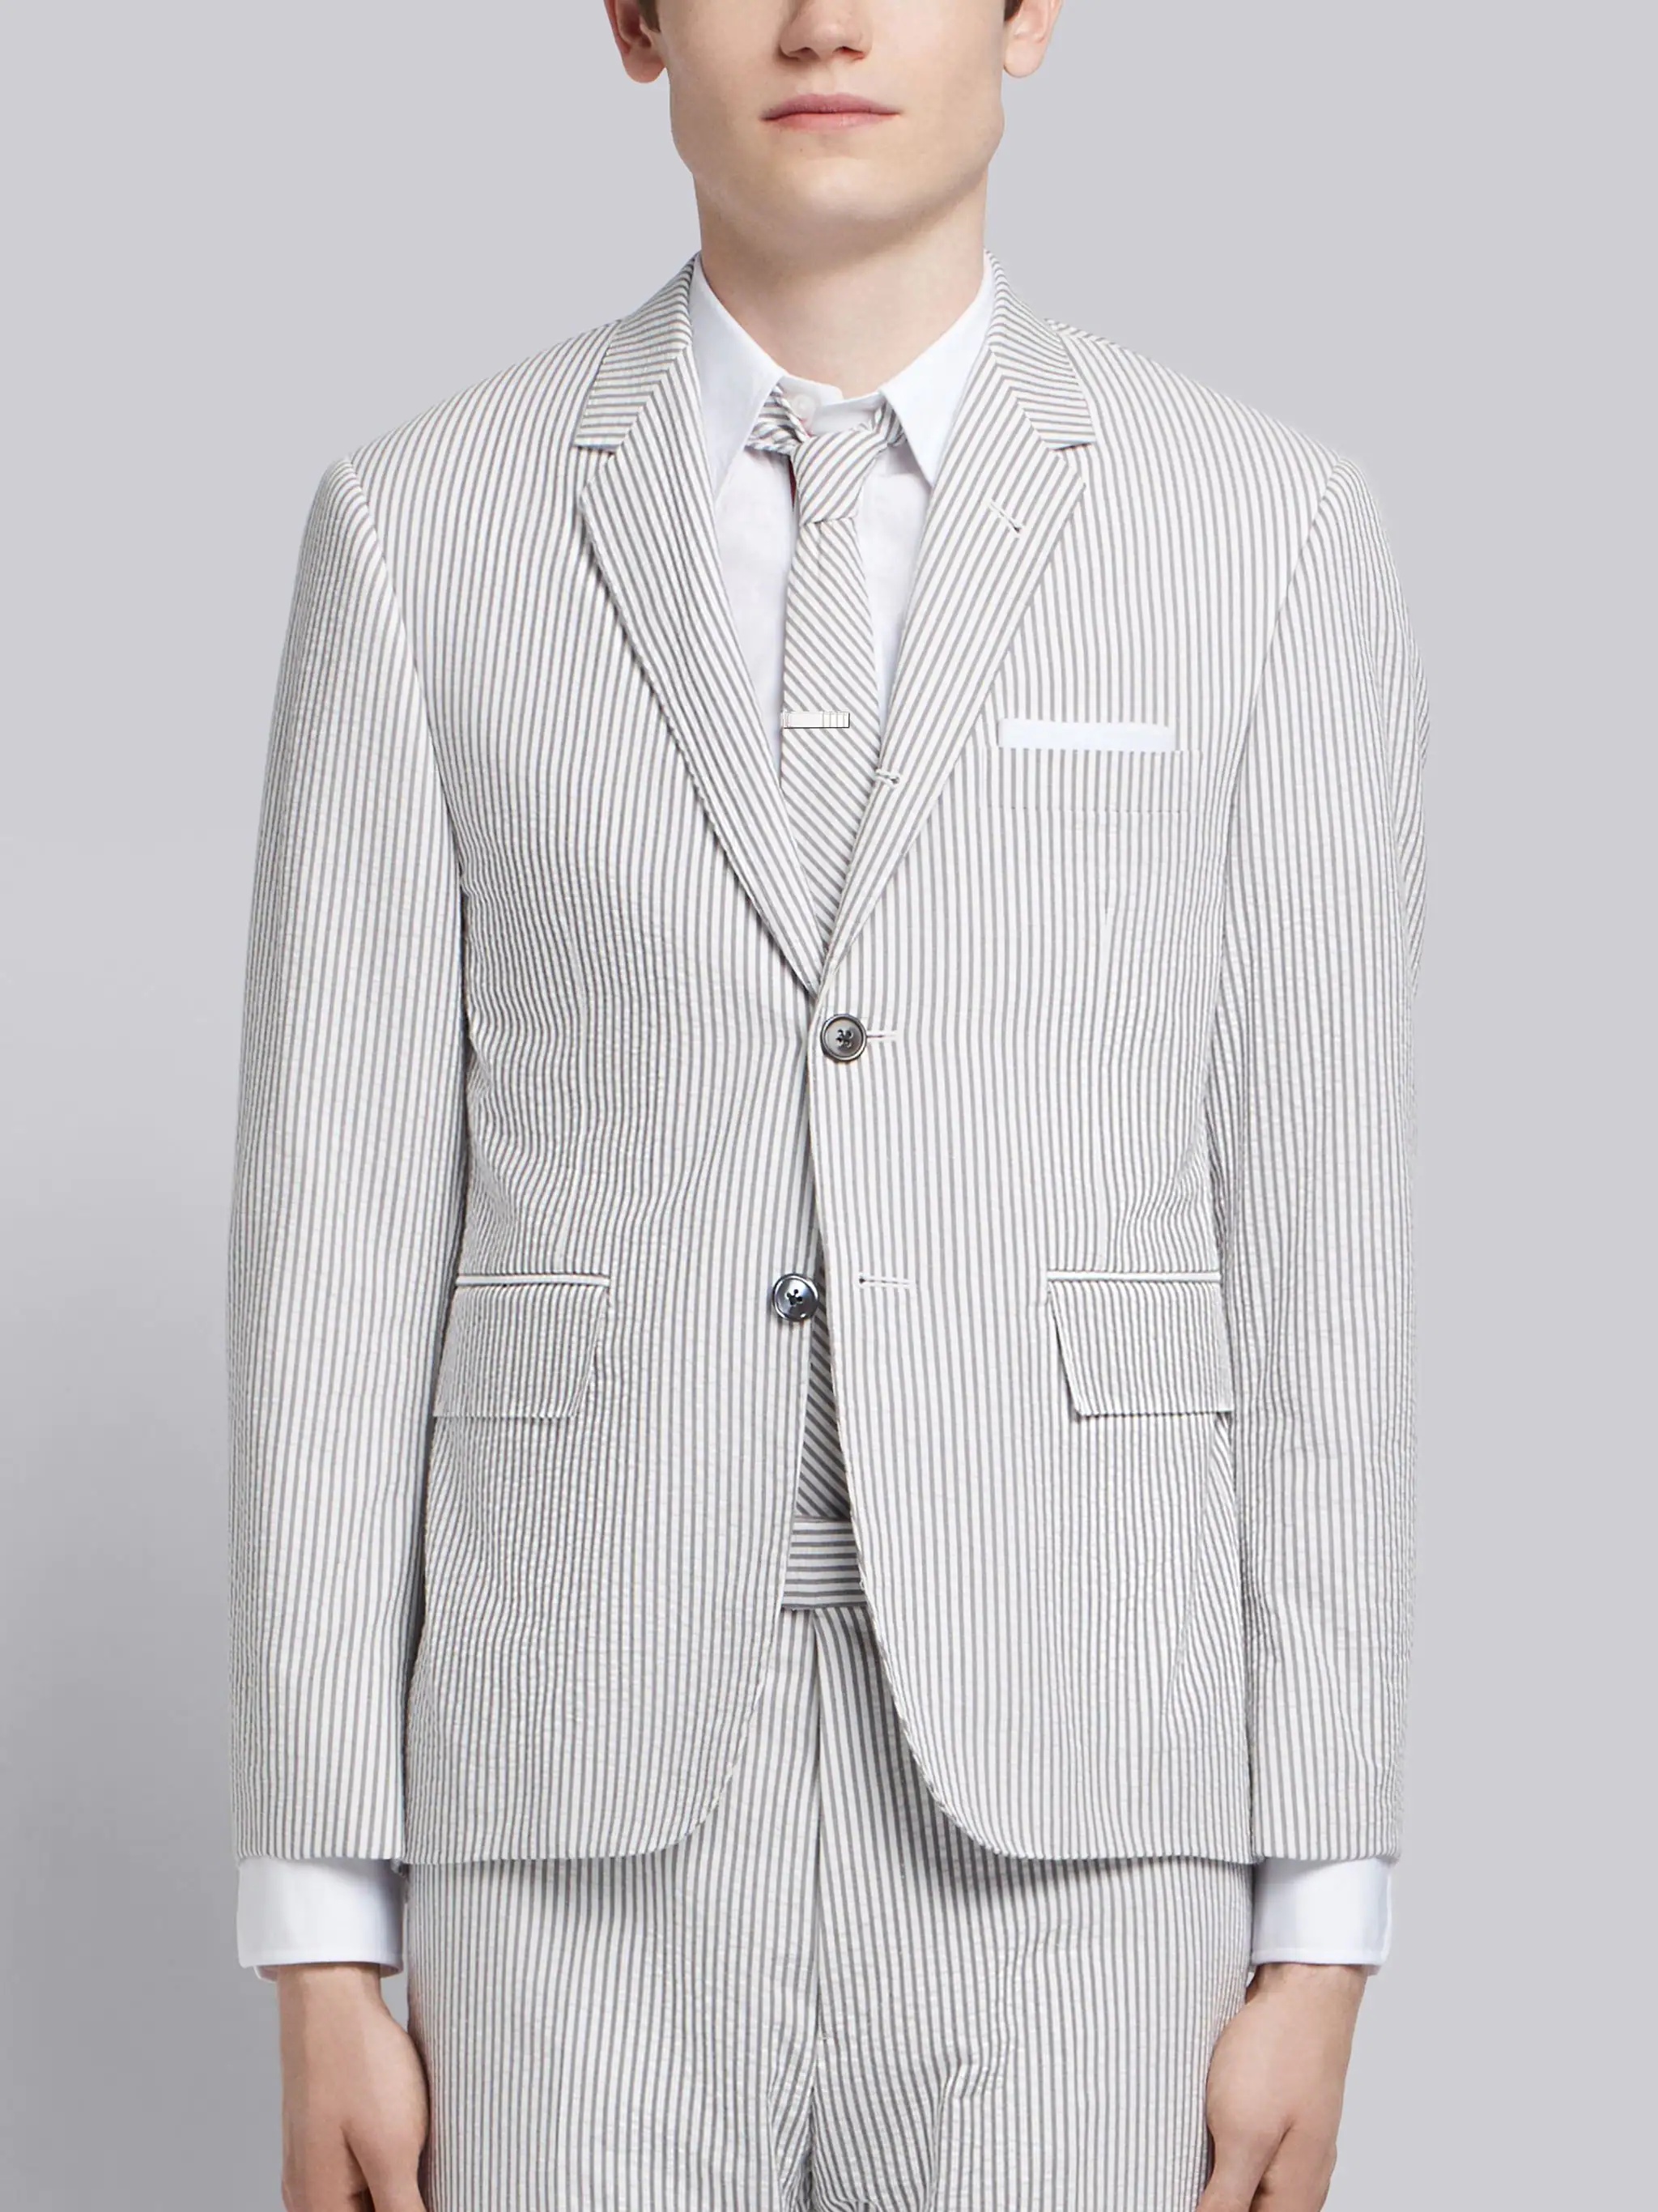 Medium Grey Seersucker Classic Suit and Tie - 3